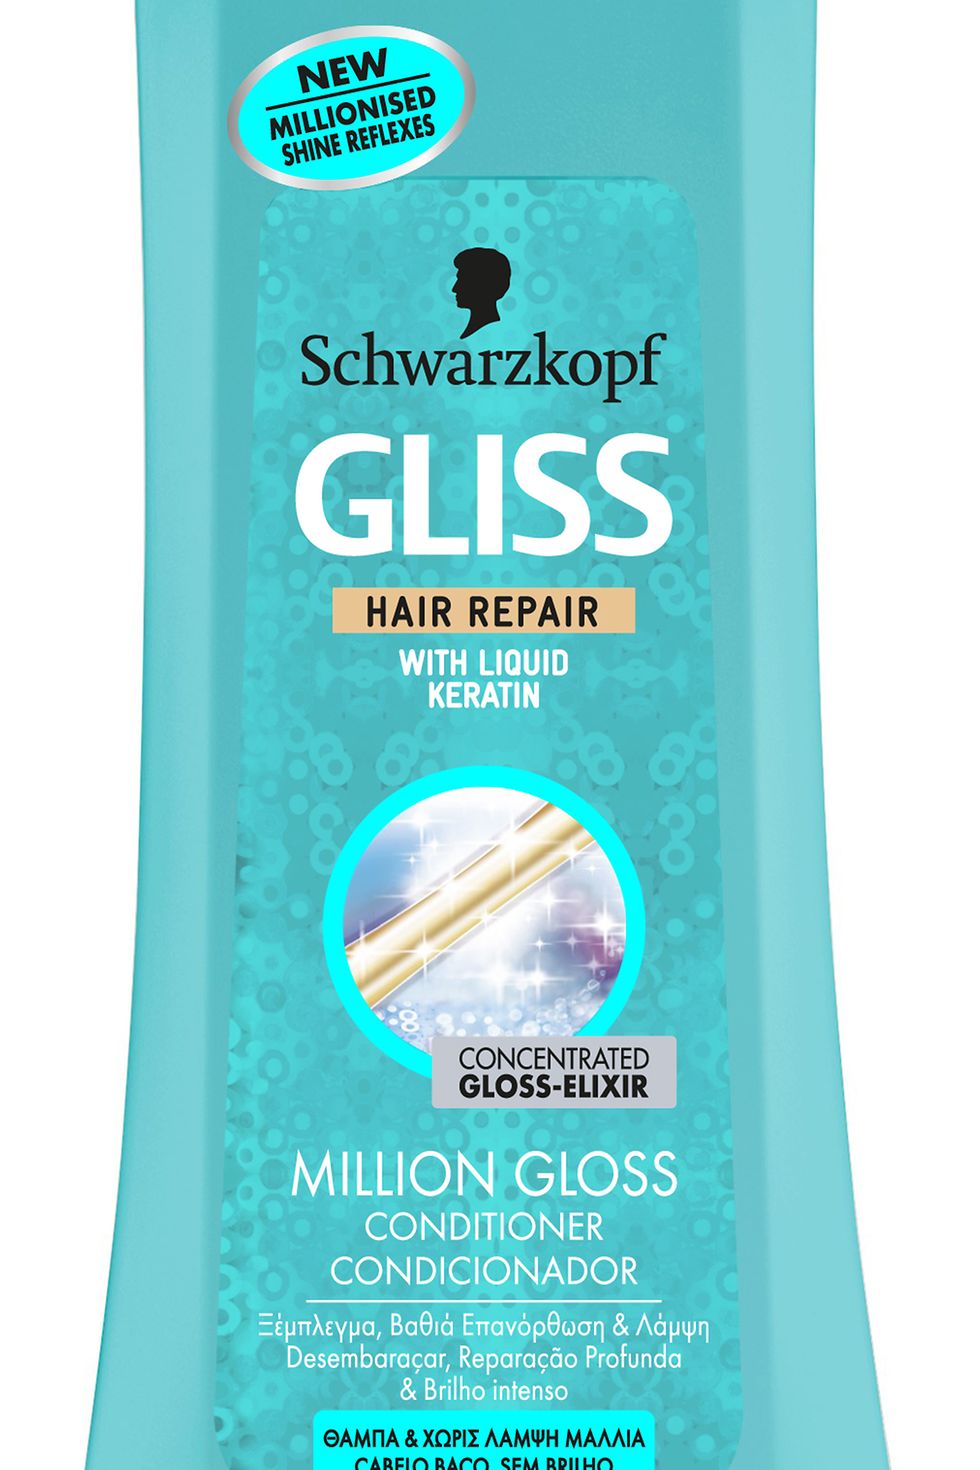 Condicionador Gliss Million Gloss